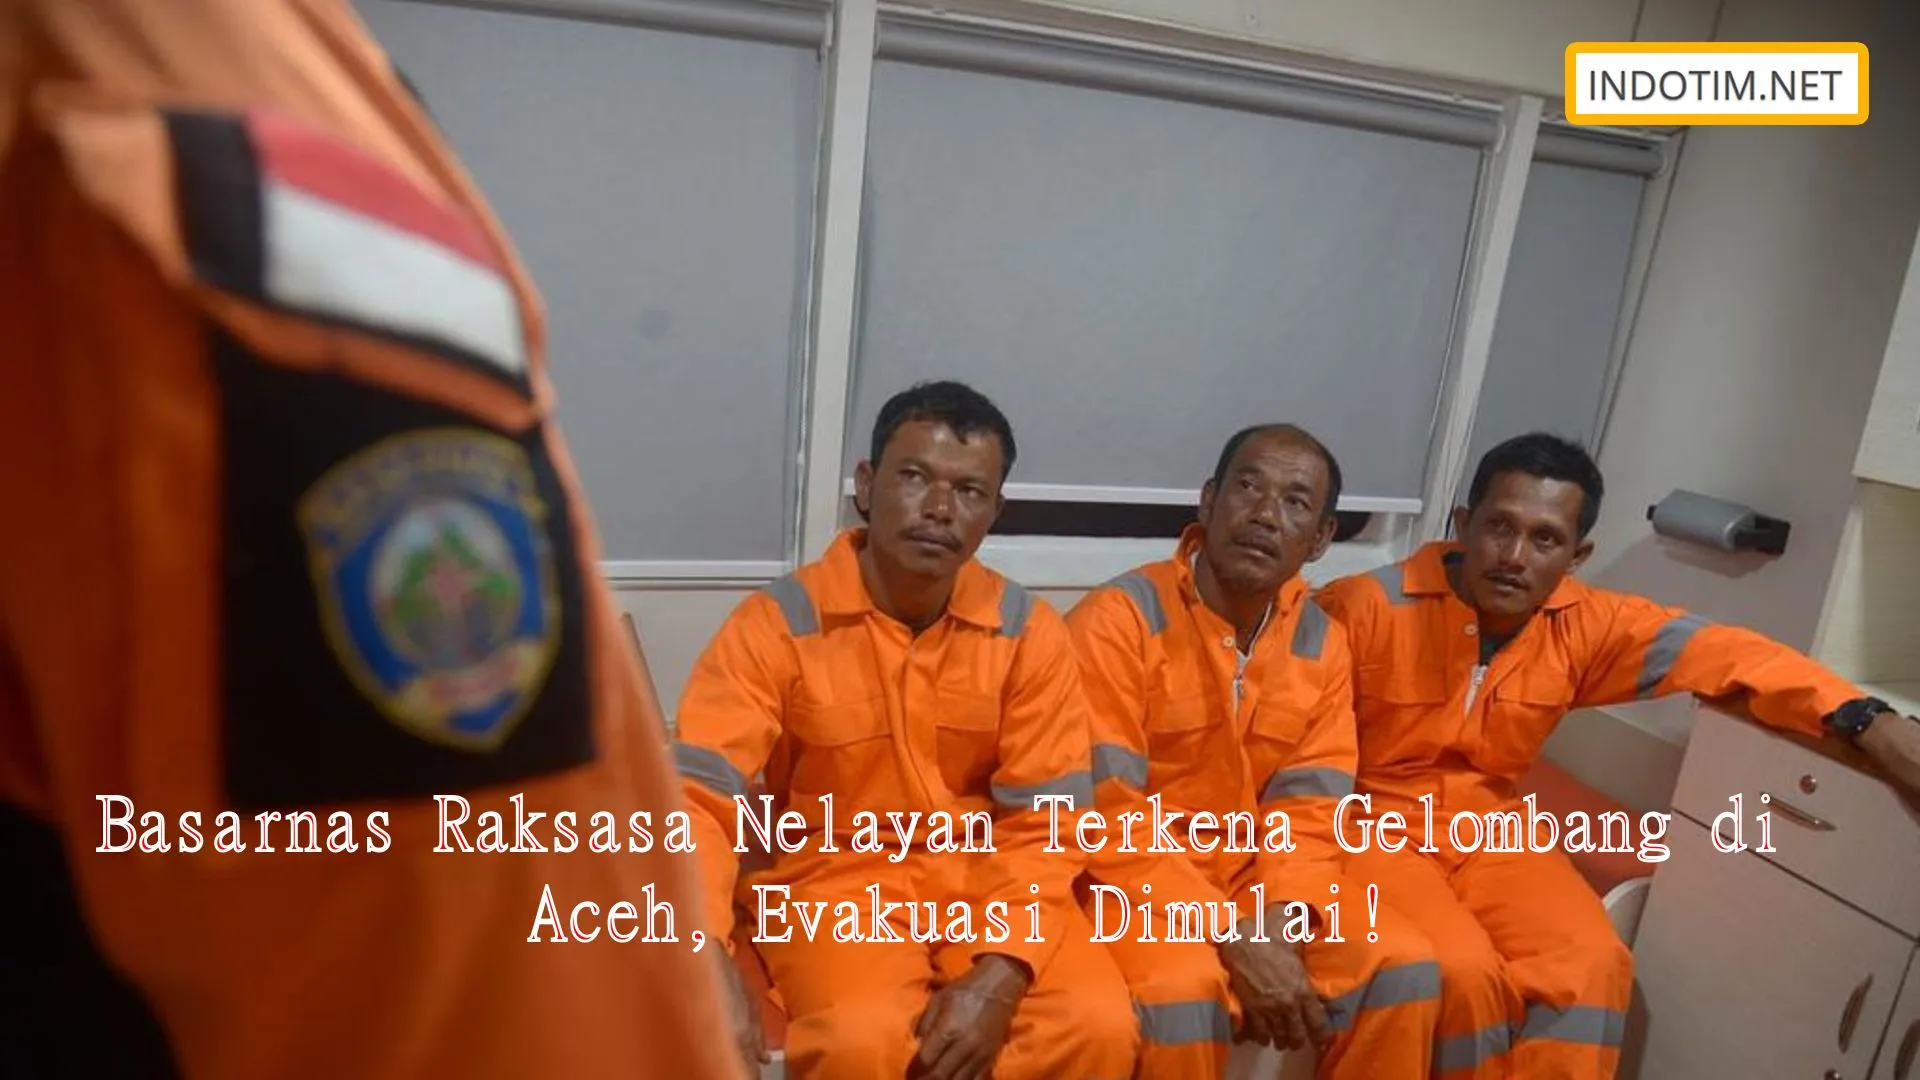 Basarnas Raksasa Nelayan Terkena Gelombang di Aceh, Evakuasi Dimulai!